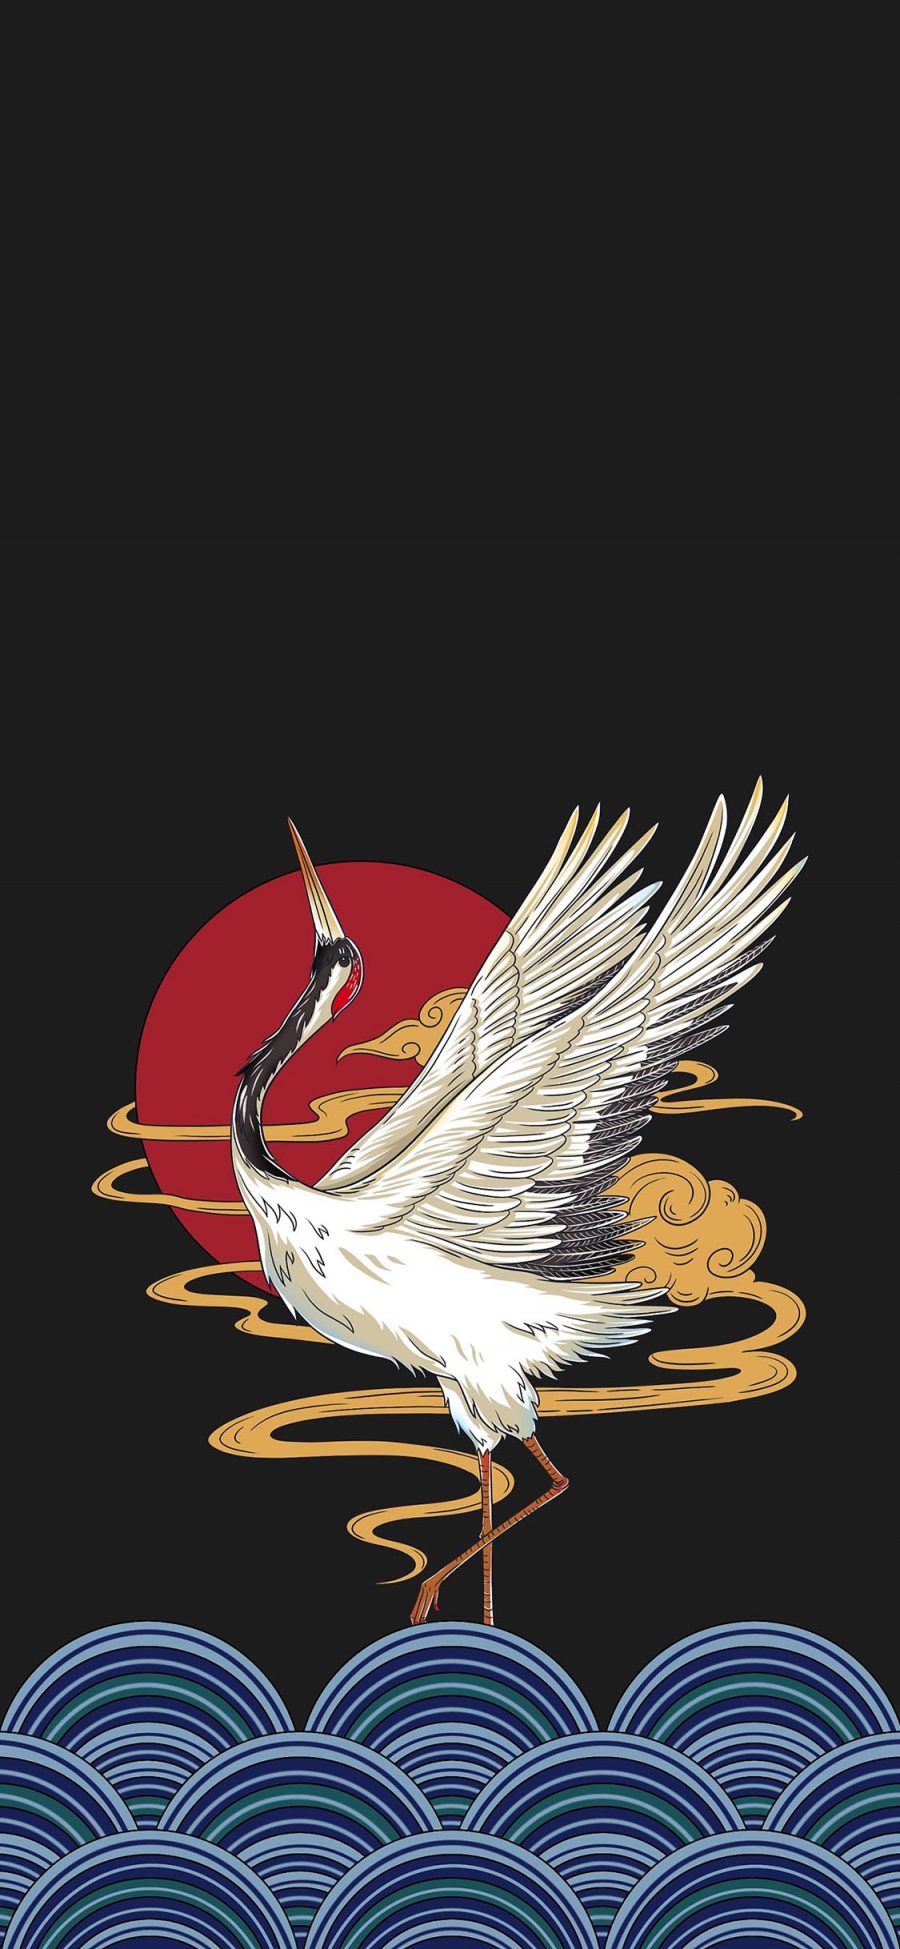 [2436×1125]插图 仙鹤 和风 日式 苹果手机动漫壁纸图片